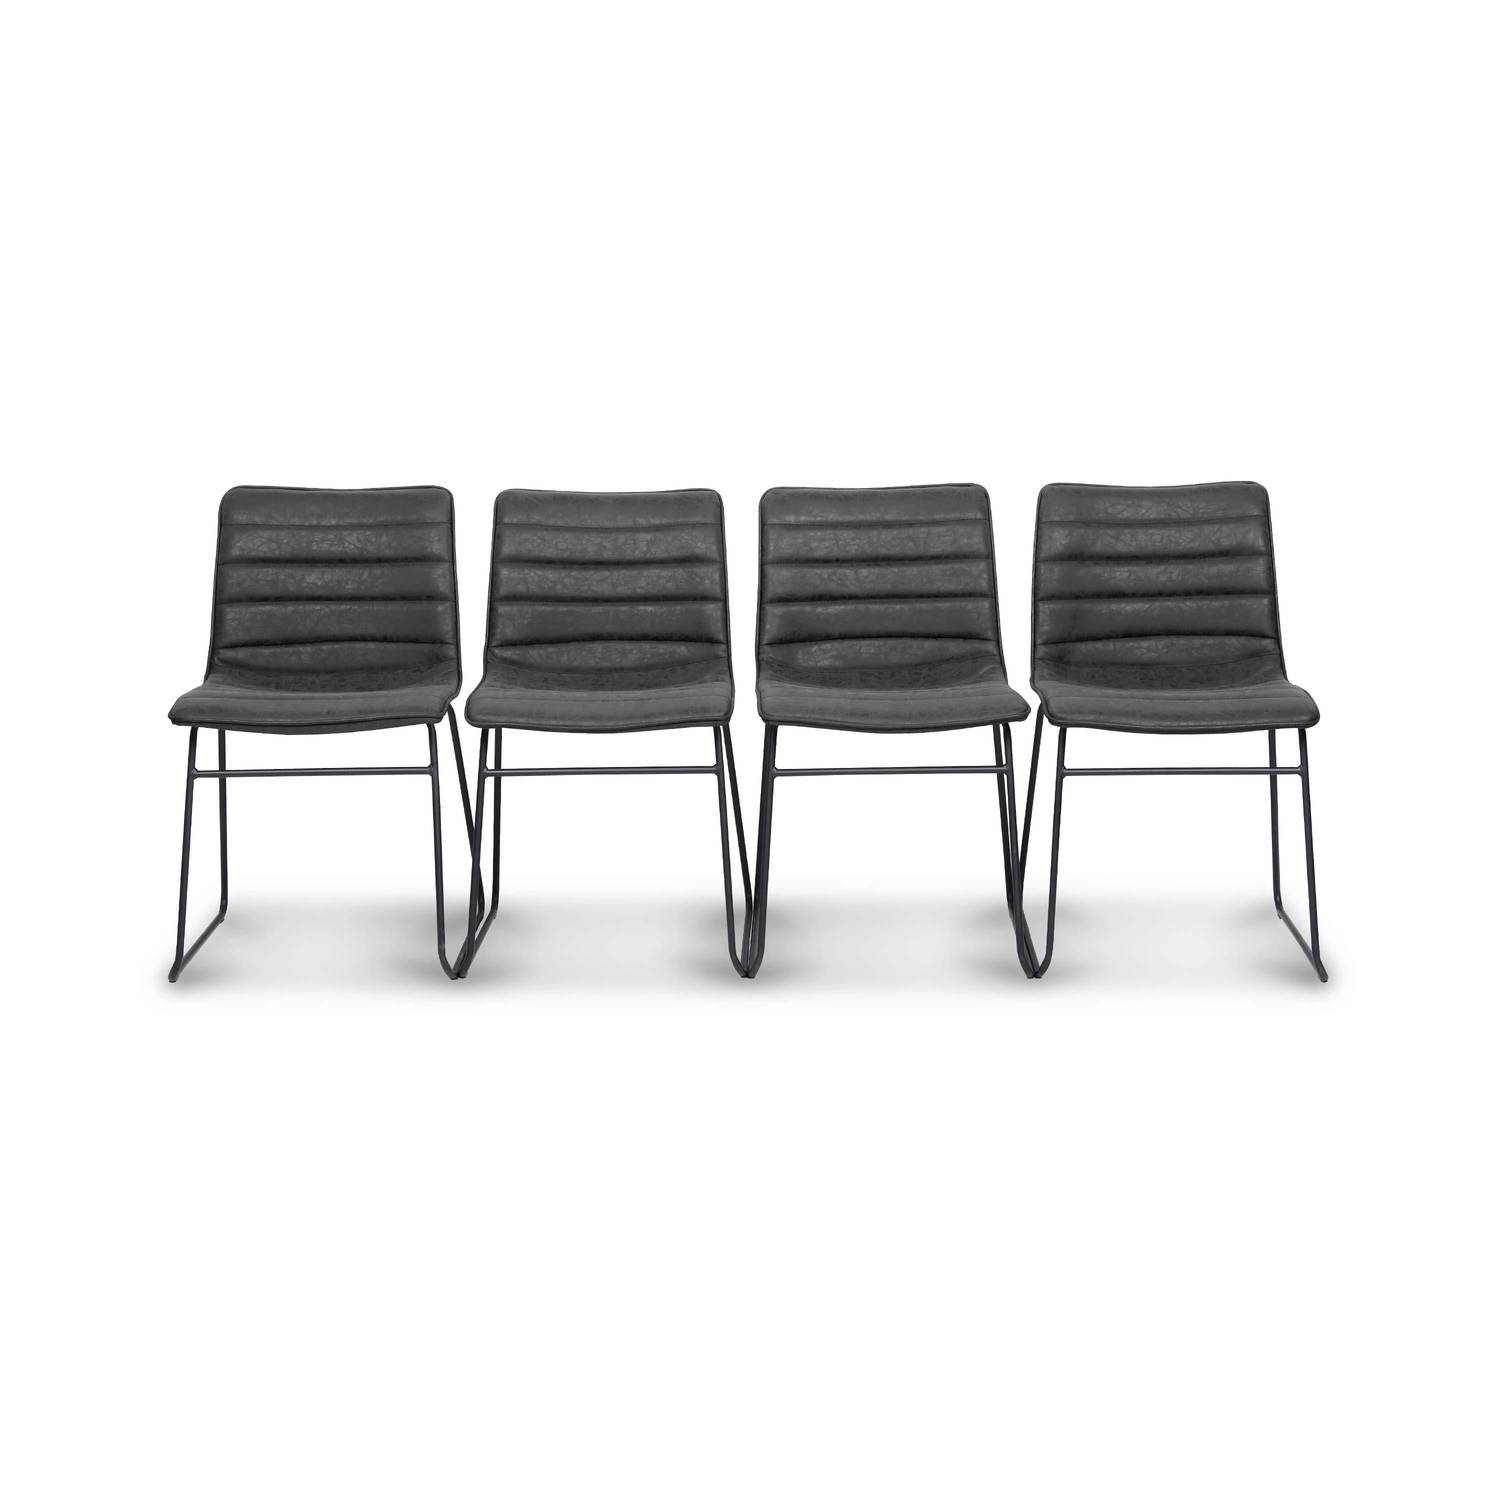 4-er Set schwarze Stühle – Mumbai – Kunstlederstühle, Metallbeine, B55xT45xH78cm Photo1